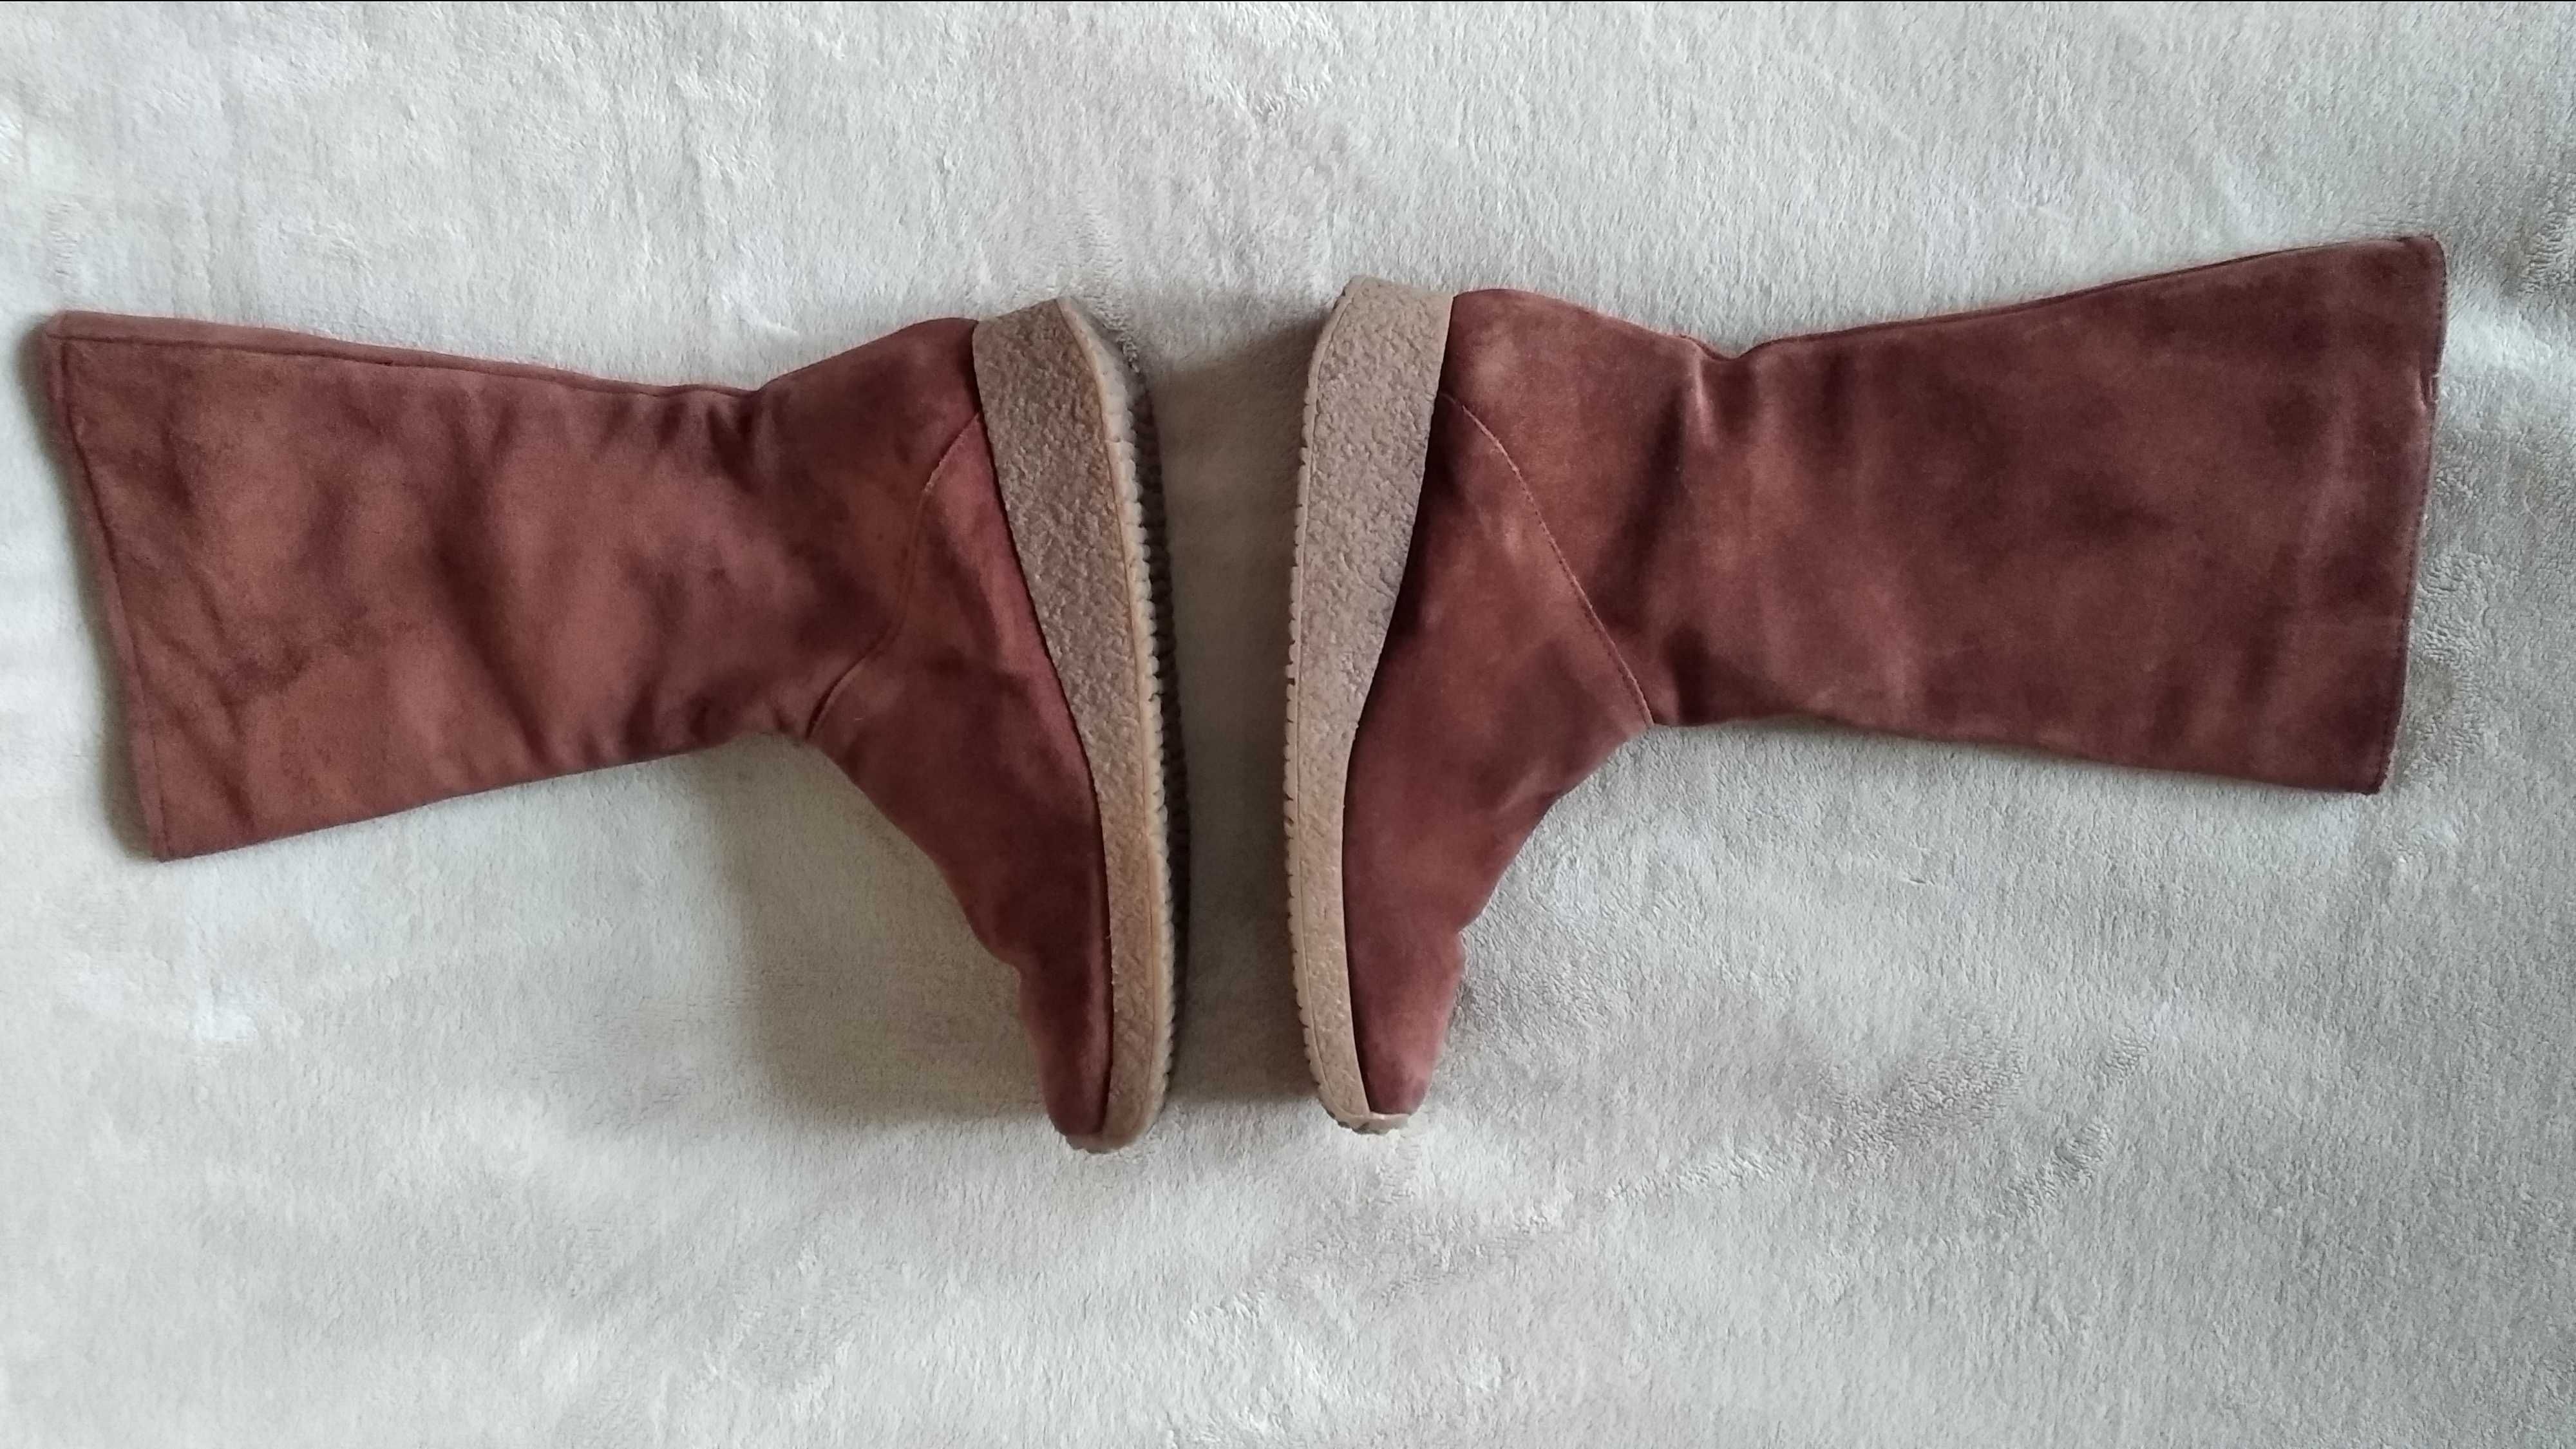 Buty kozaki skórzane zamszowe damskie włoskie na zamku r. 37 (24 cm)